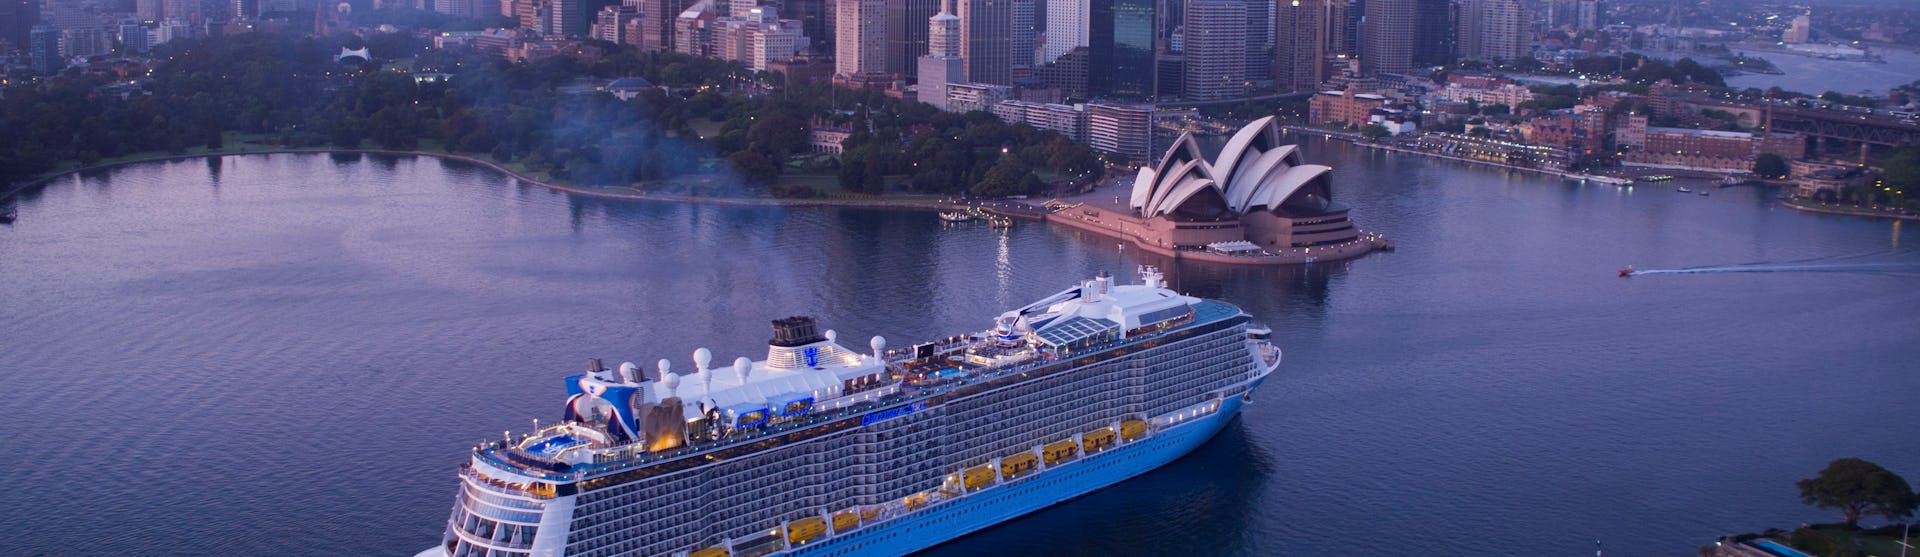 Ovation of the Seas kryssar förbi Sydneys ikoniska operahus med stadens skyskrapor som uppenbarar sig bakom.